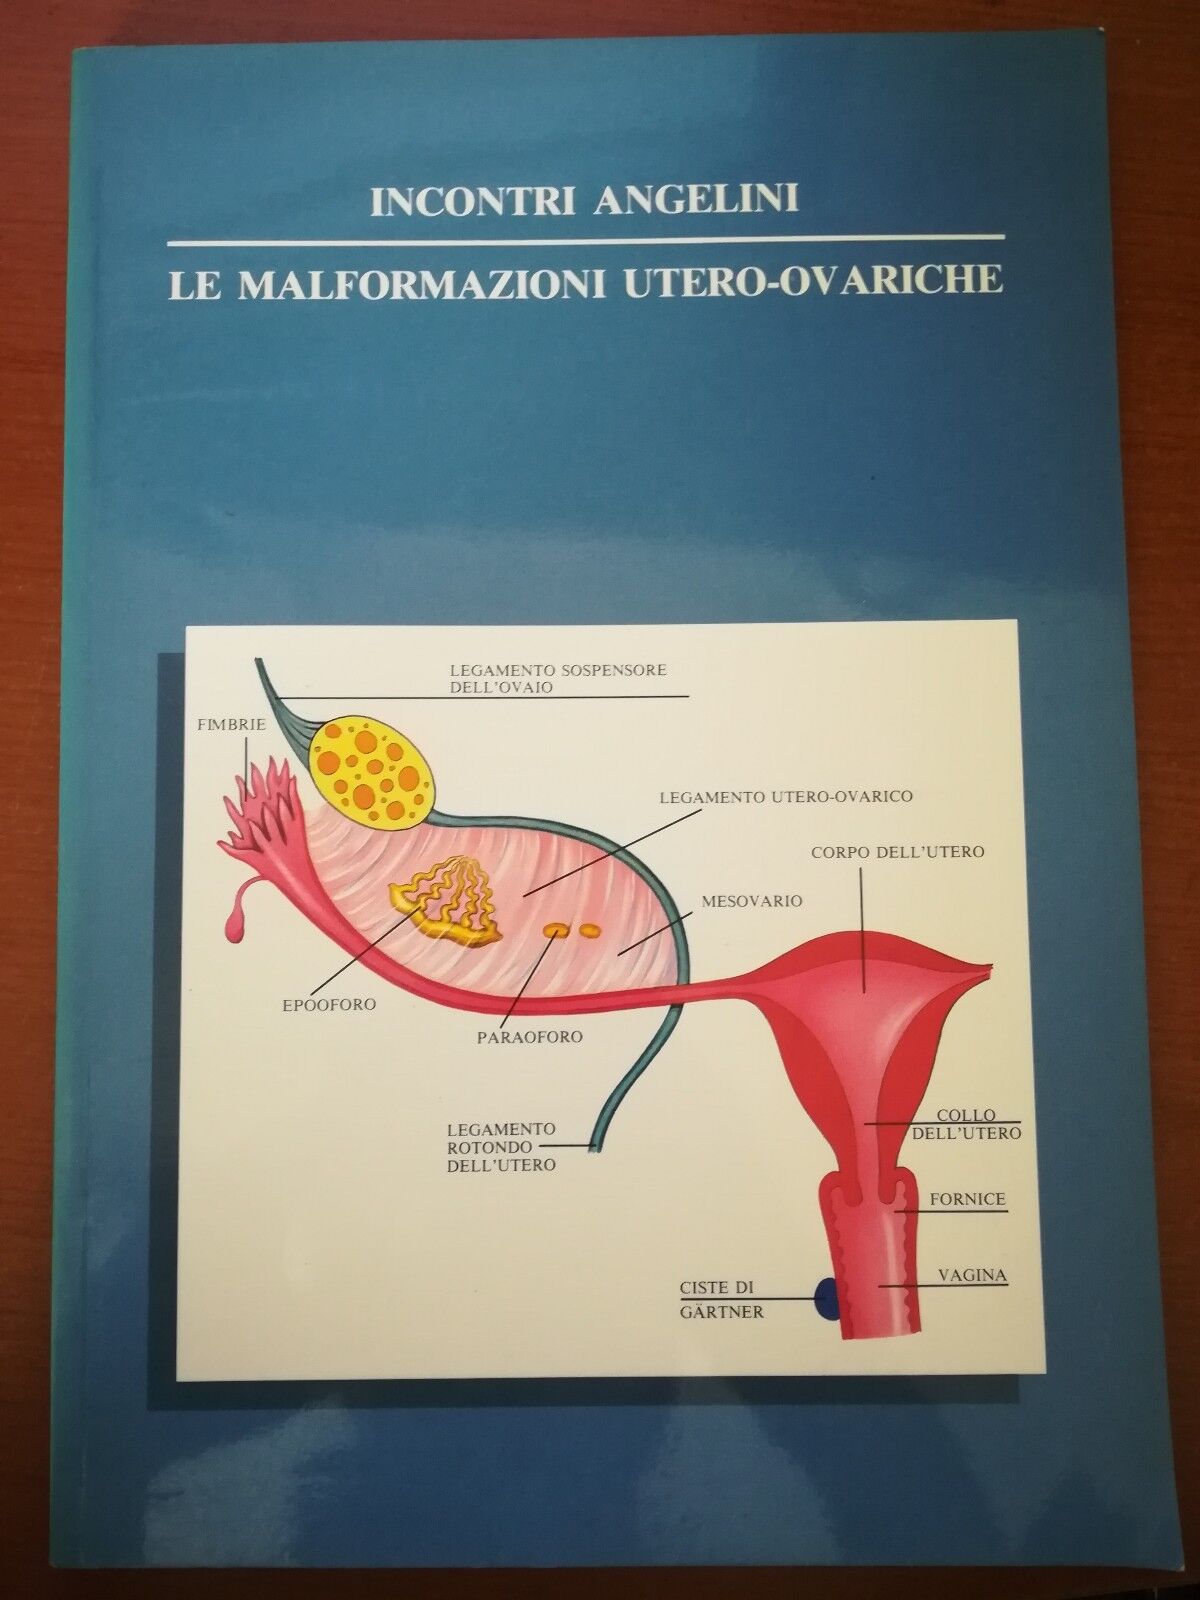 Le malformazioni utero-ovariche - AA.VV. - Incontri Angelini - 1987 - M